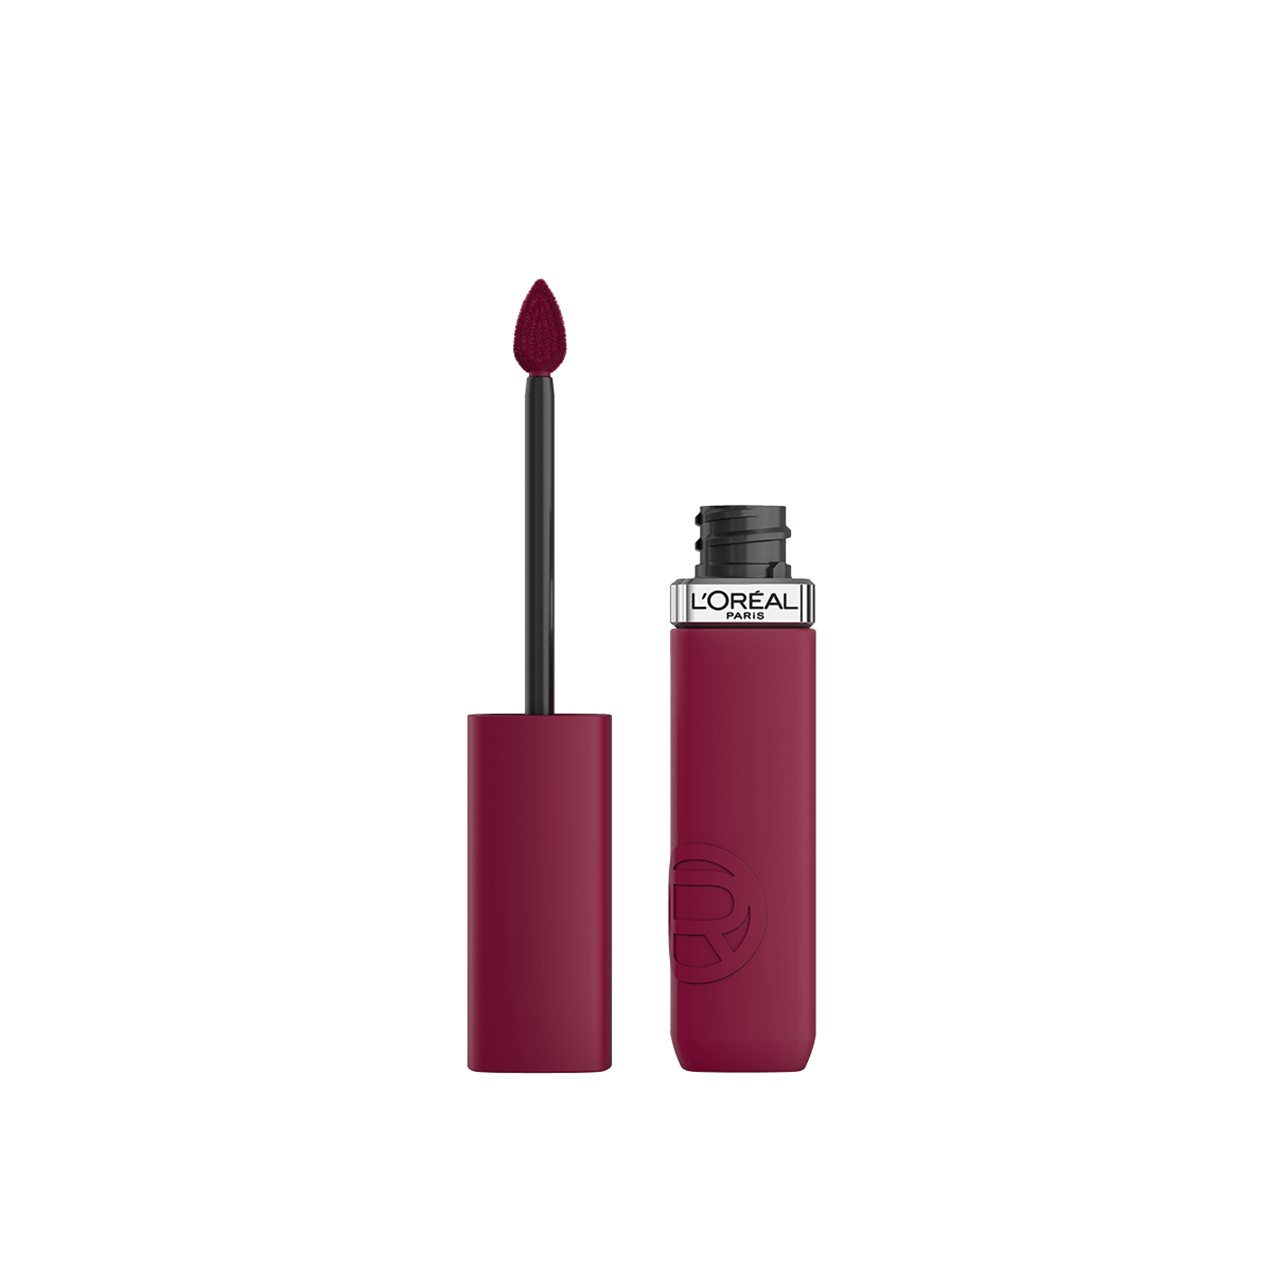 L'Oréal Paris Infallible Matte Resistance Liquid Lipstick 560 Pay Day 5ml (0.17 fl oz)